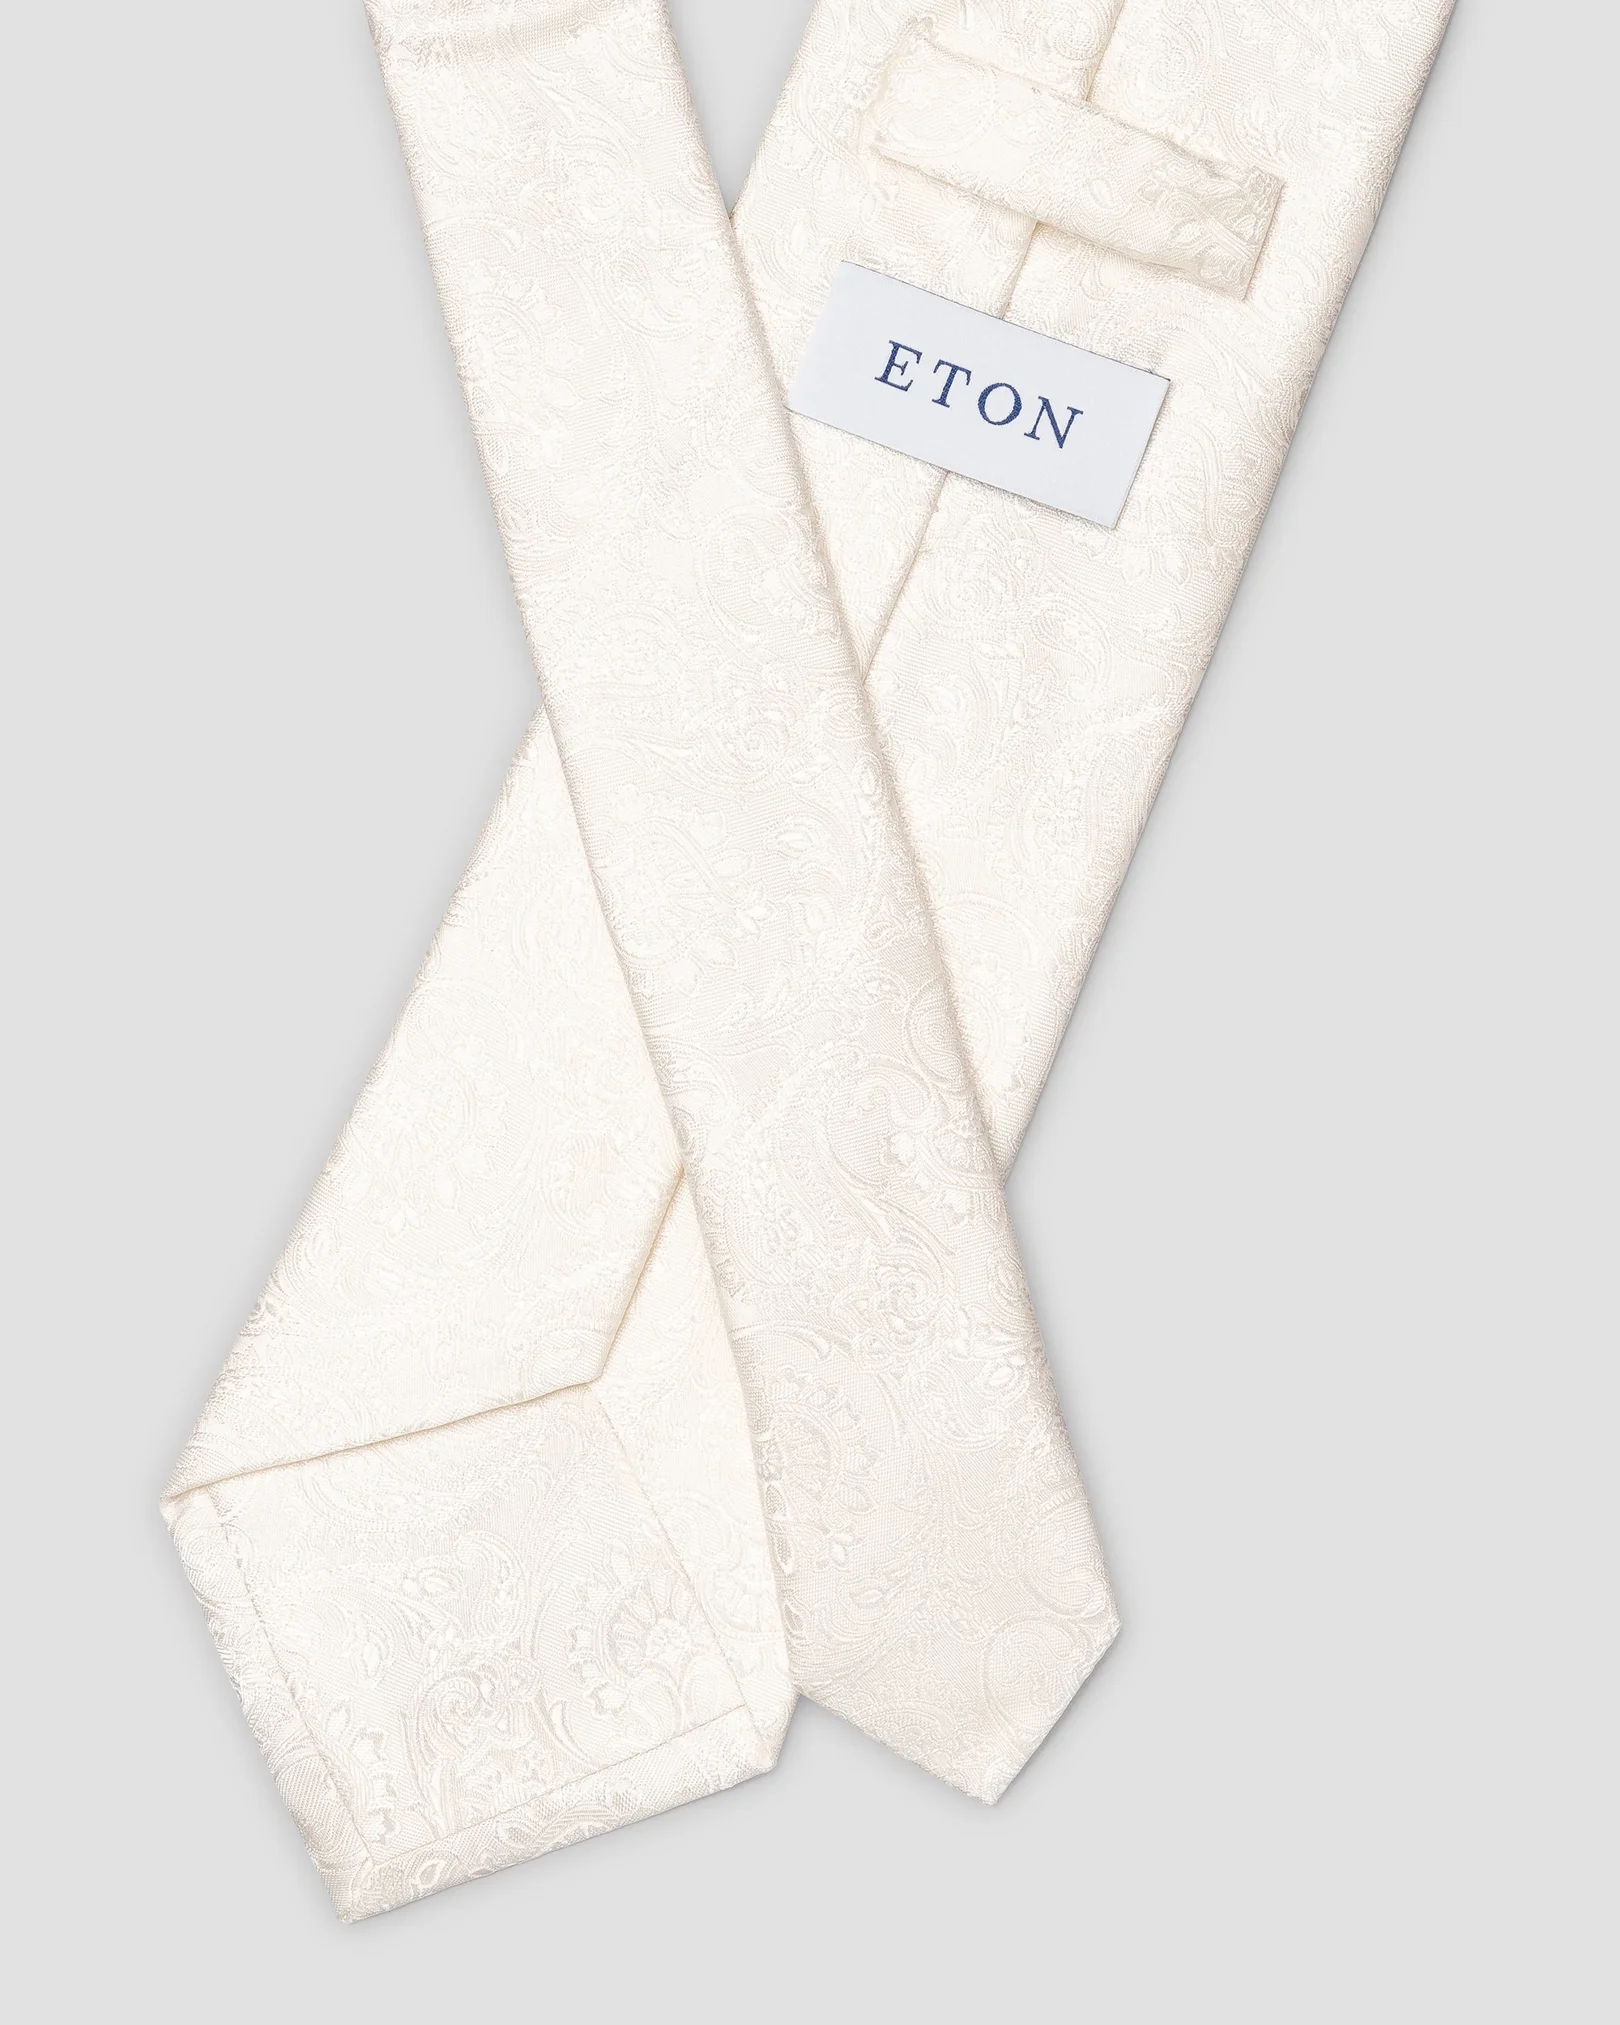 Cravate de cérémonie blanche en soie imprimé cachemire